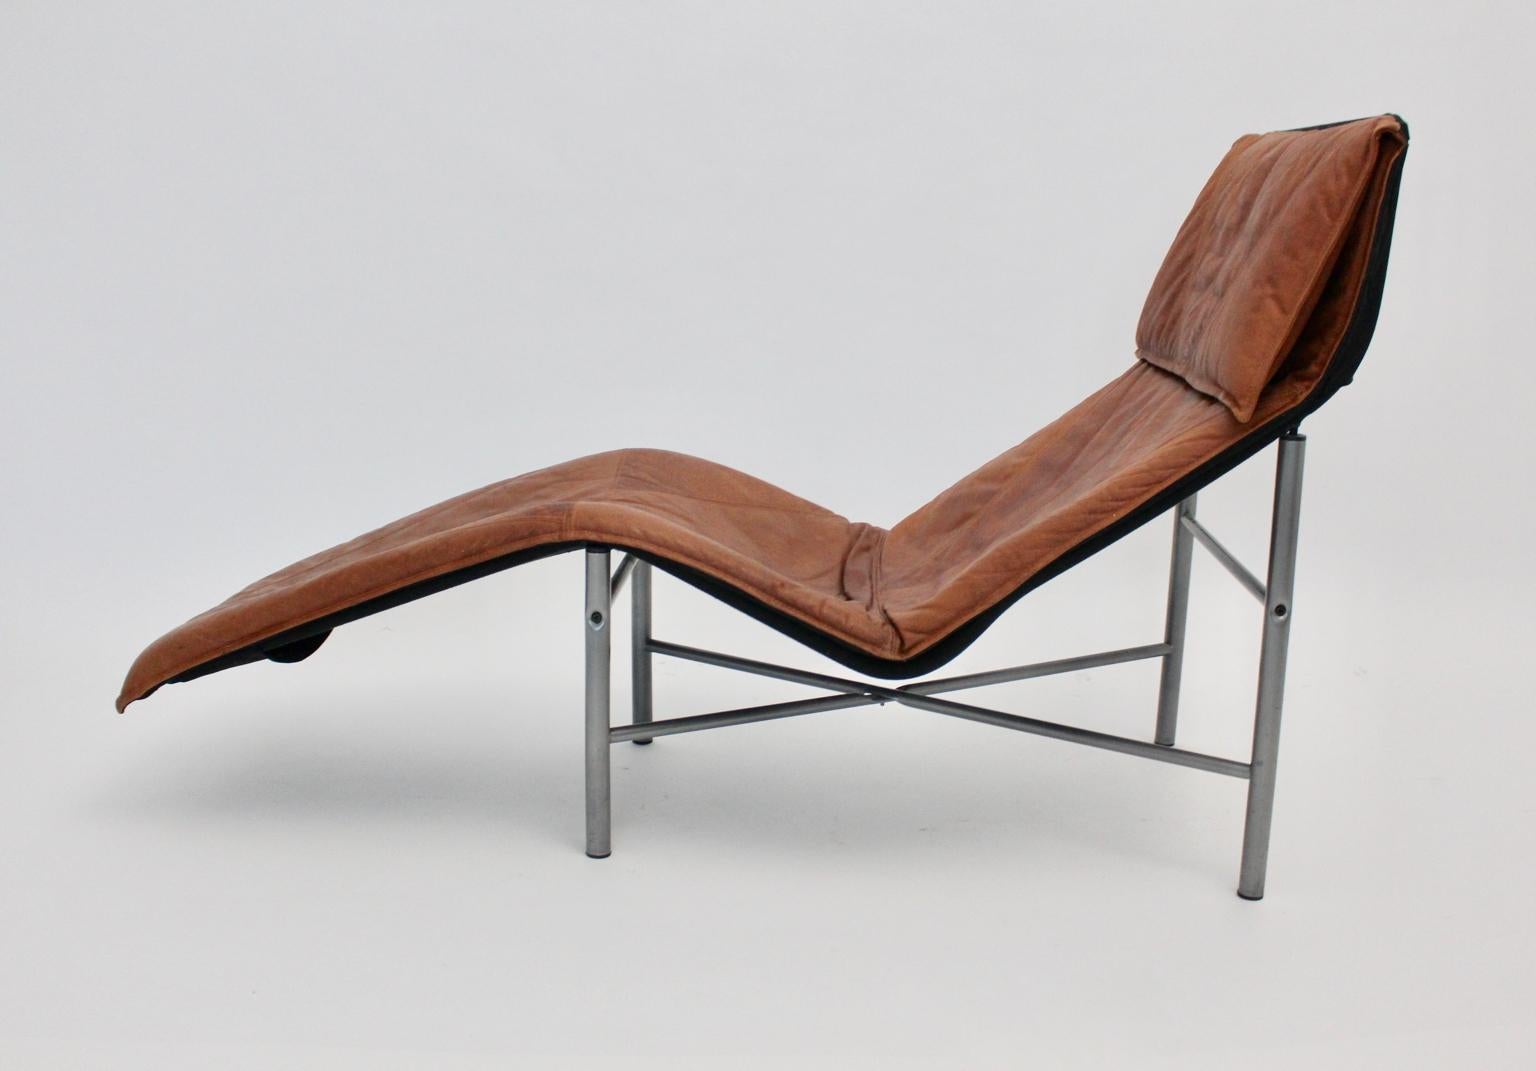 Cette chaise longue vintage de Tord Bjorklund, 1970 Suède, allie confort et design intemporel.
La sellerie de la chaise longue était recouverte de cuir cognac et présente une belle patine du cuir.
De plus, la base a été réalisée en tube d'acier